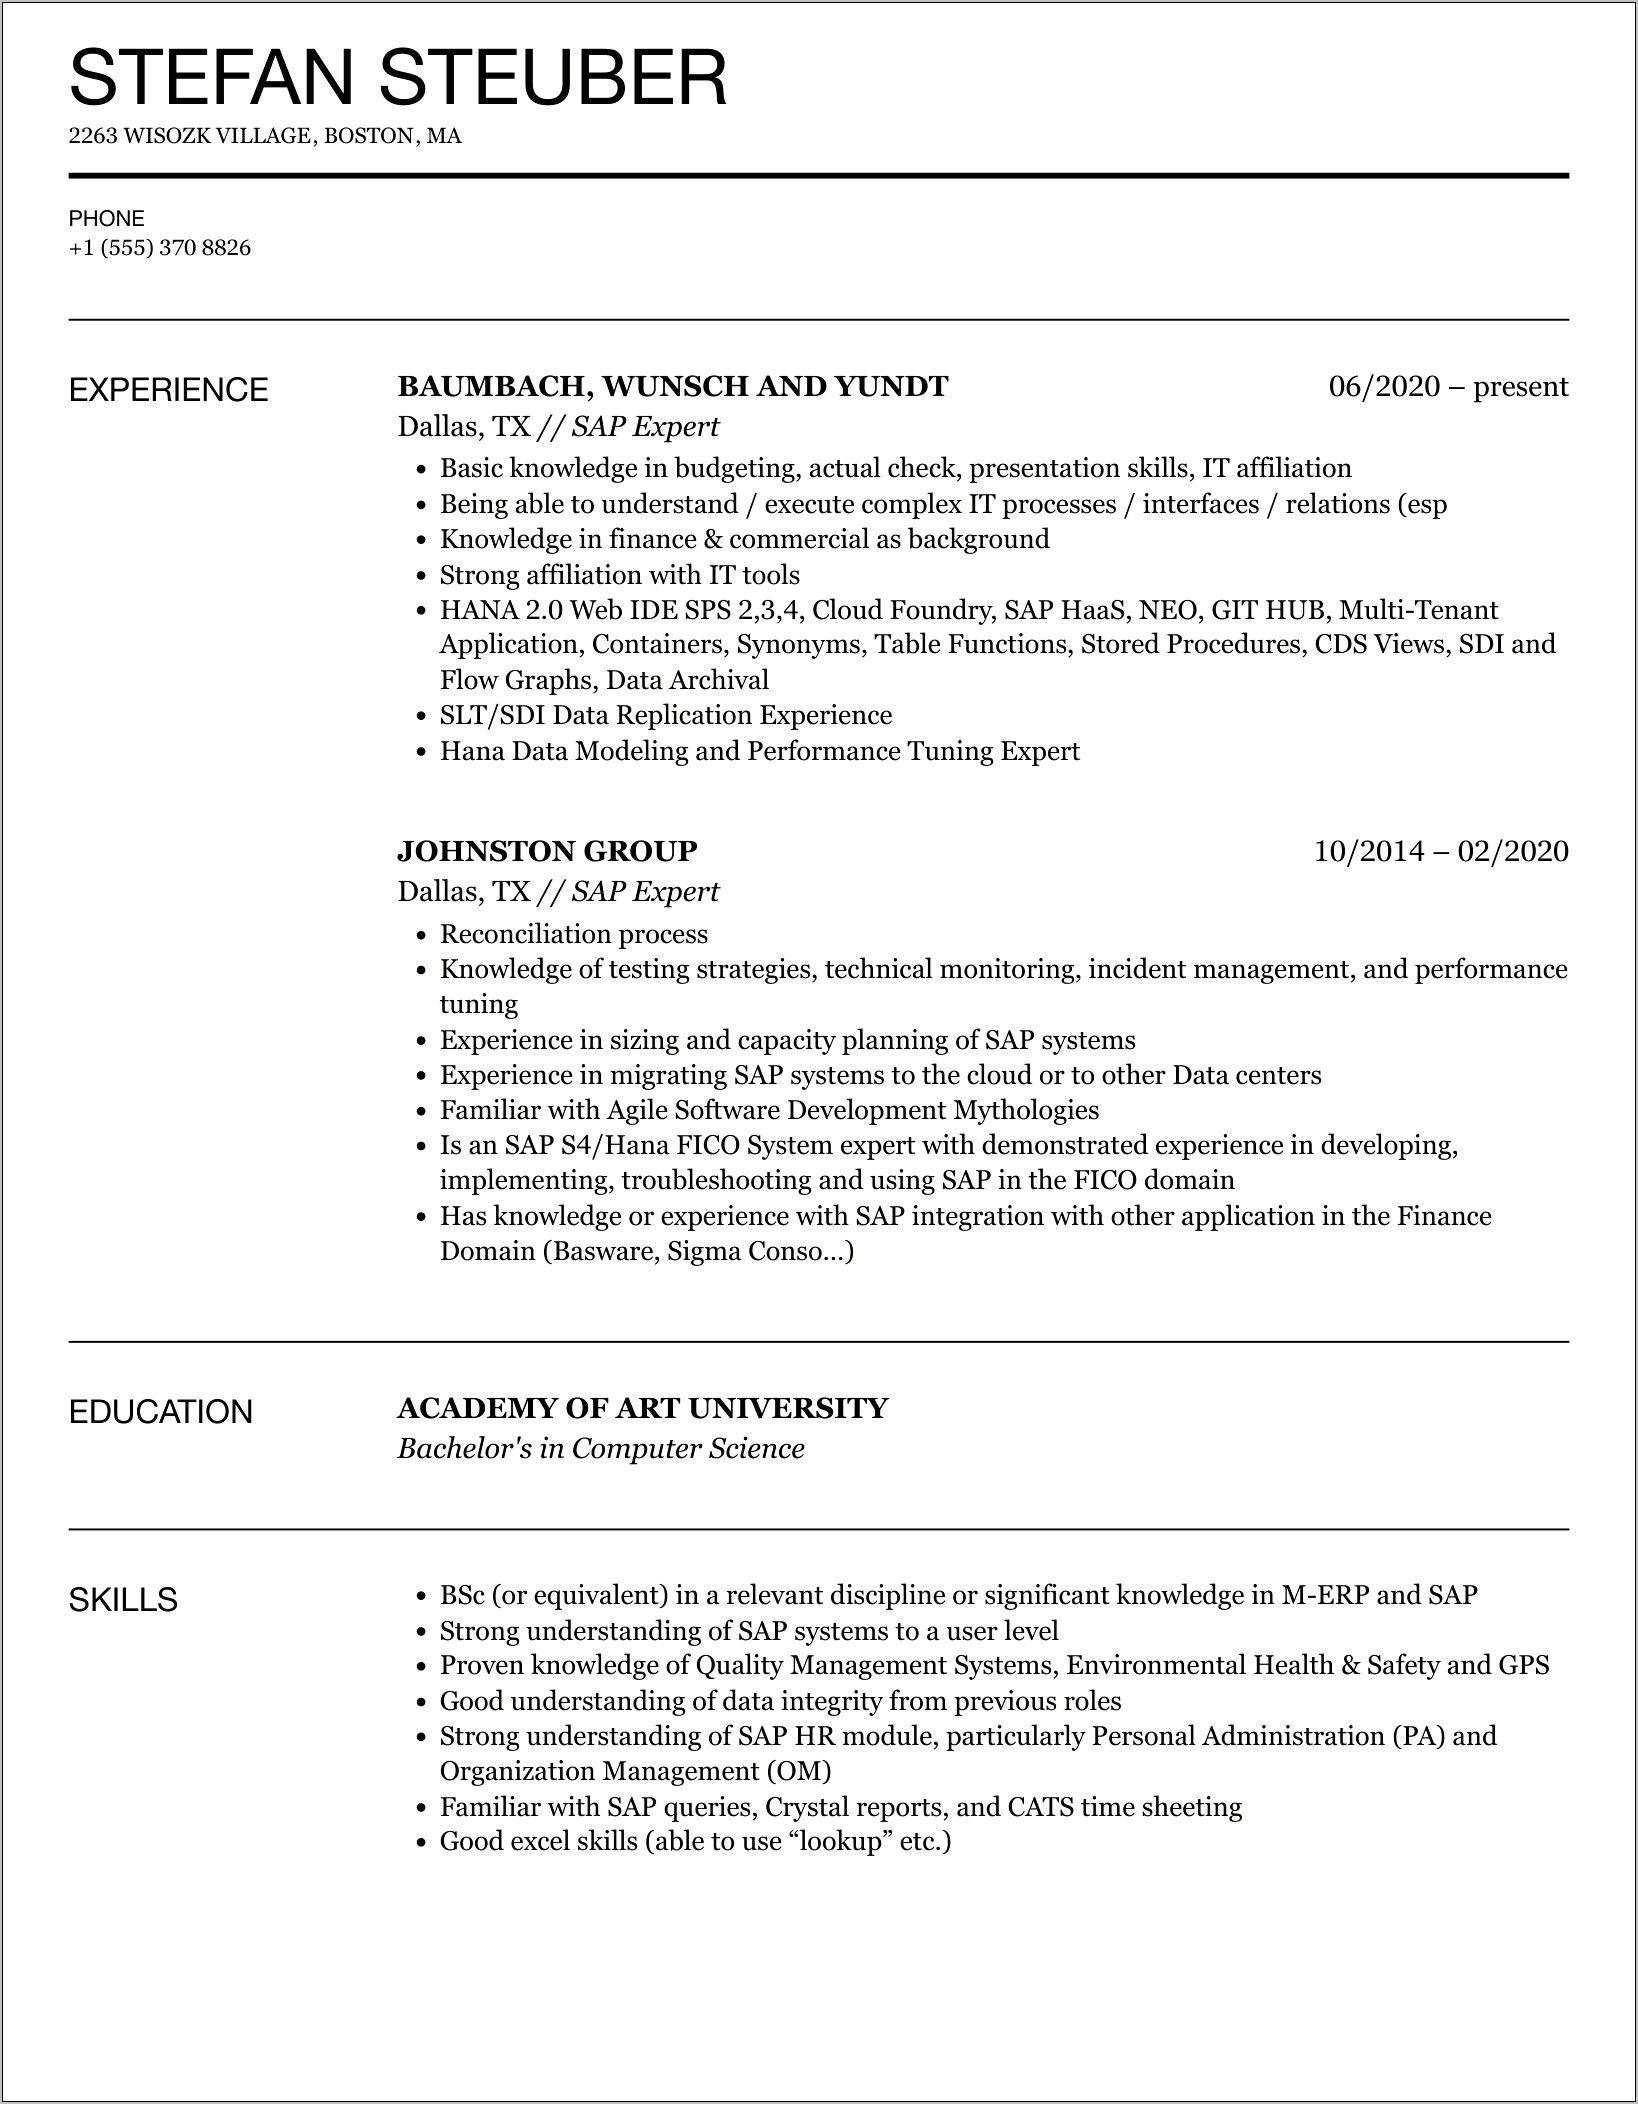 Sample Resume For Sap Jobs